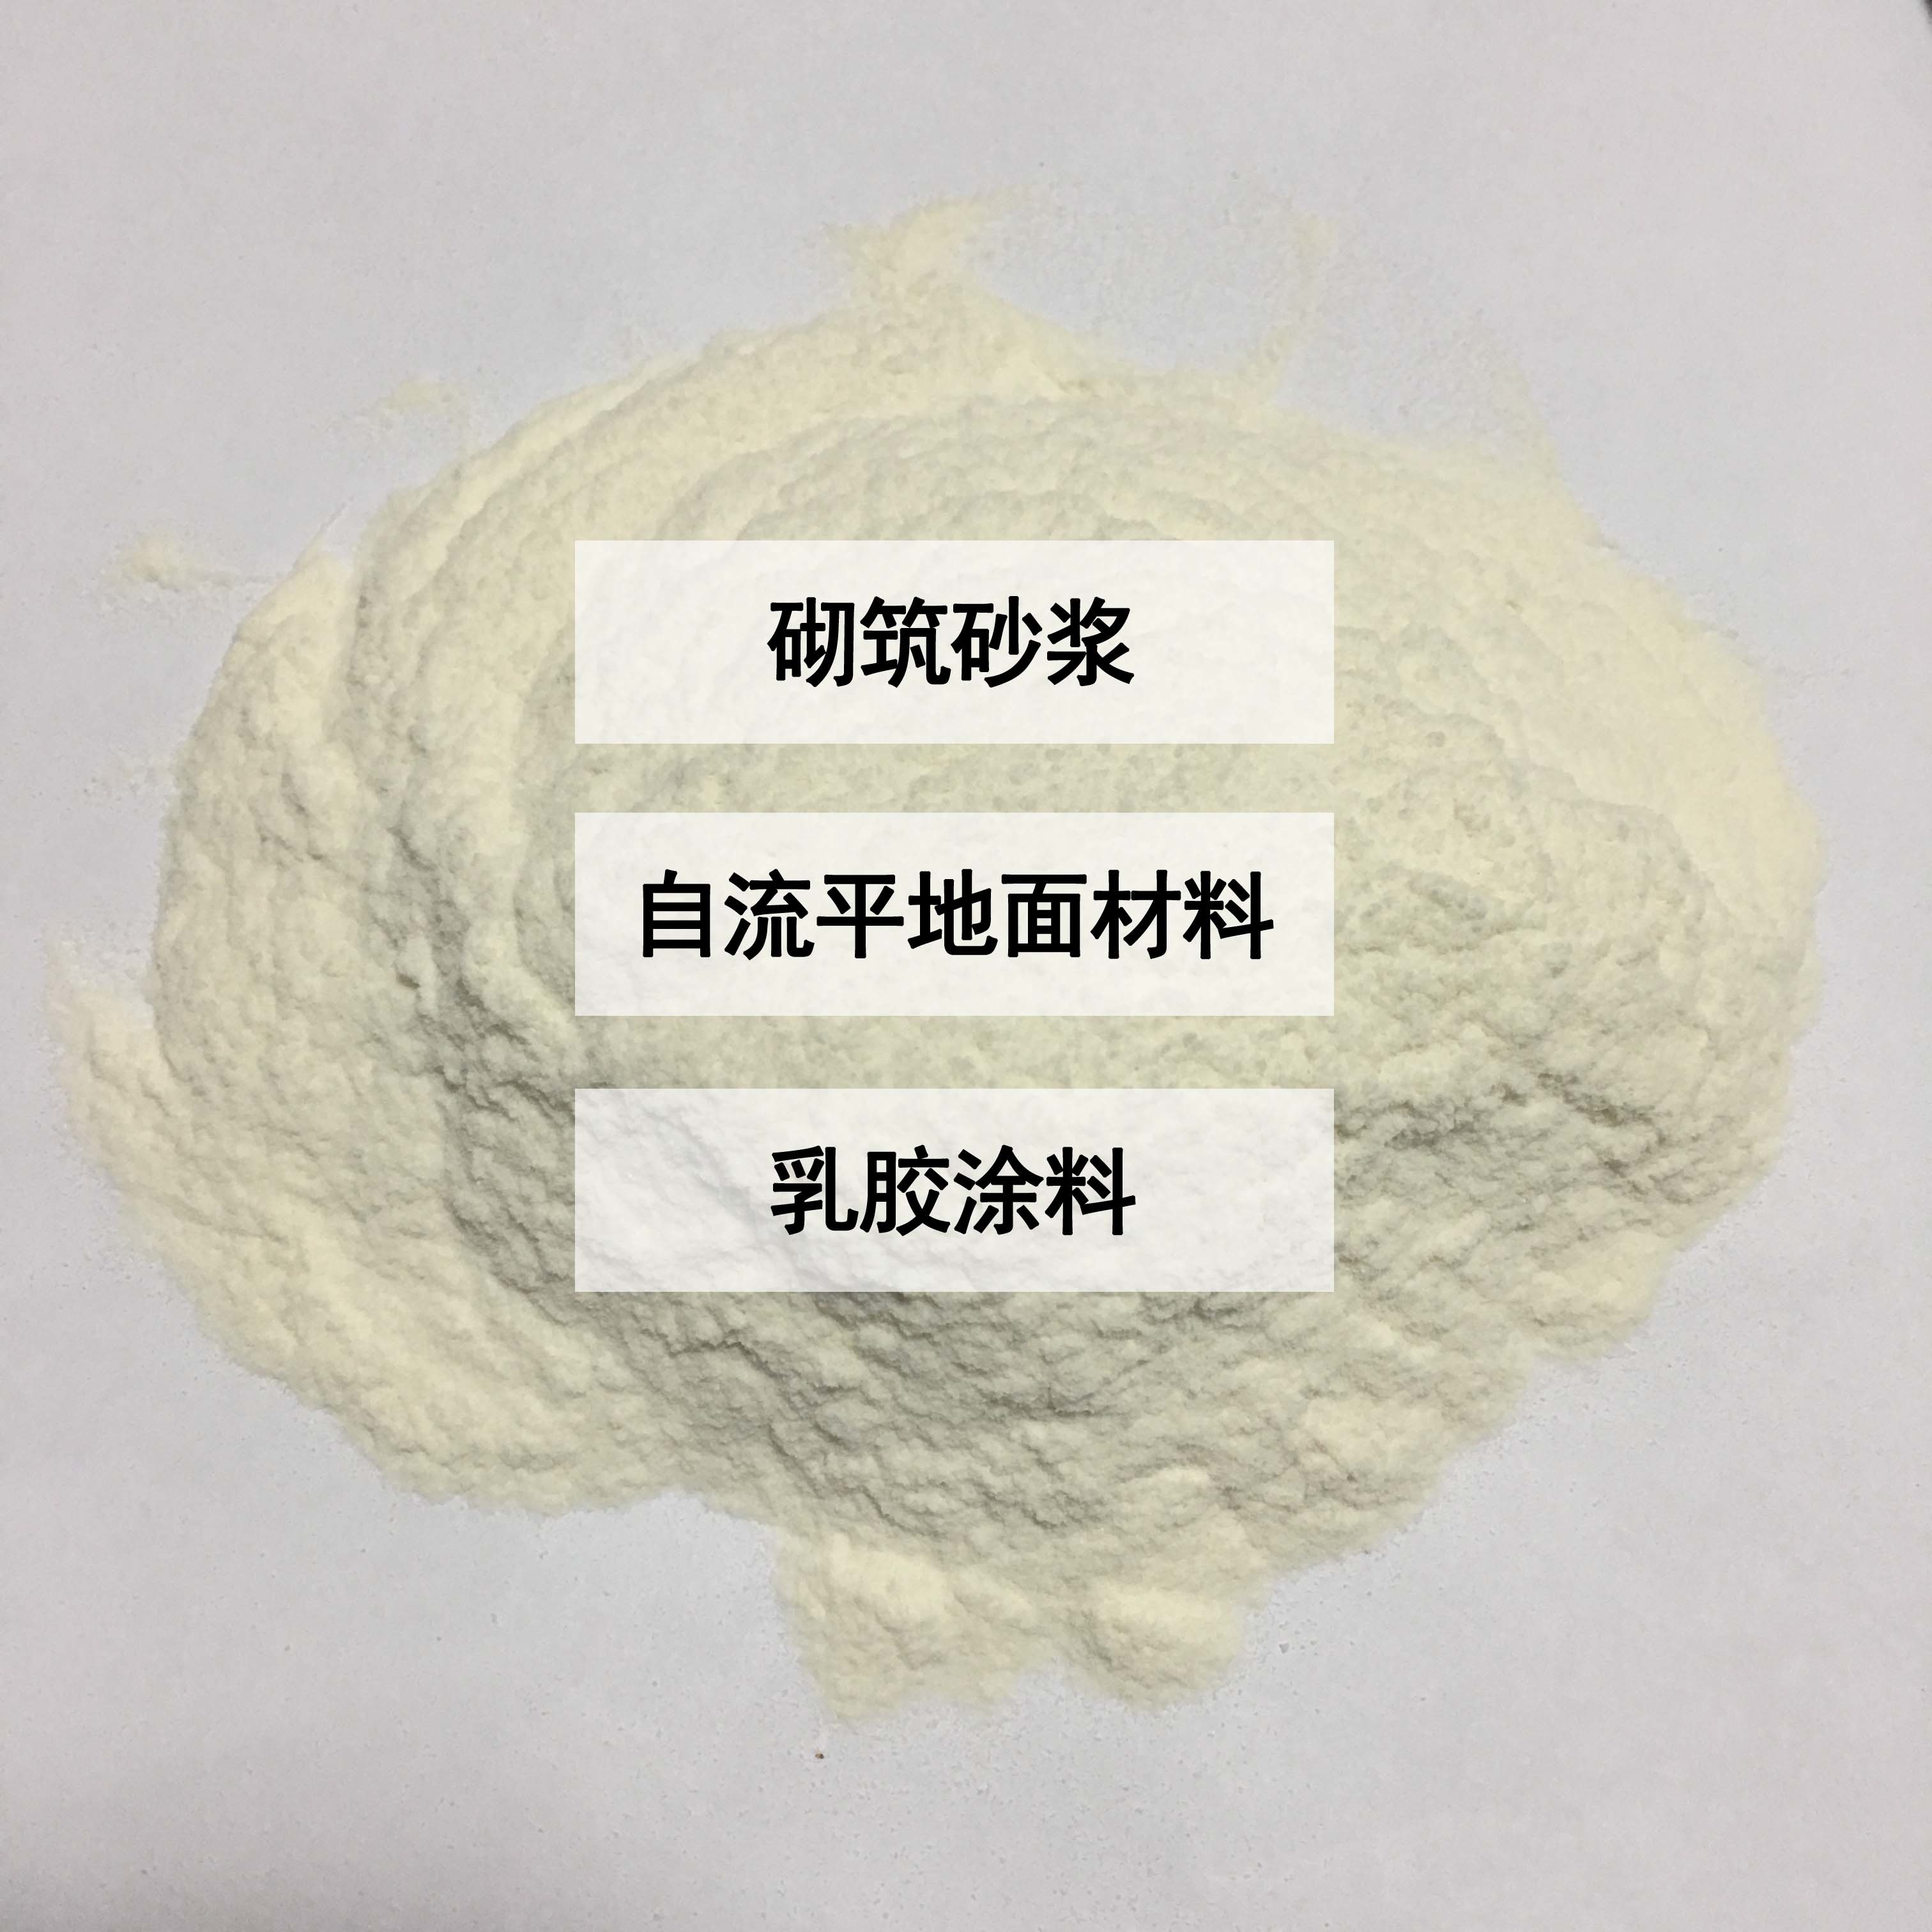 羥丙基甲基纖維素在抗裂砂漿中的作用